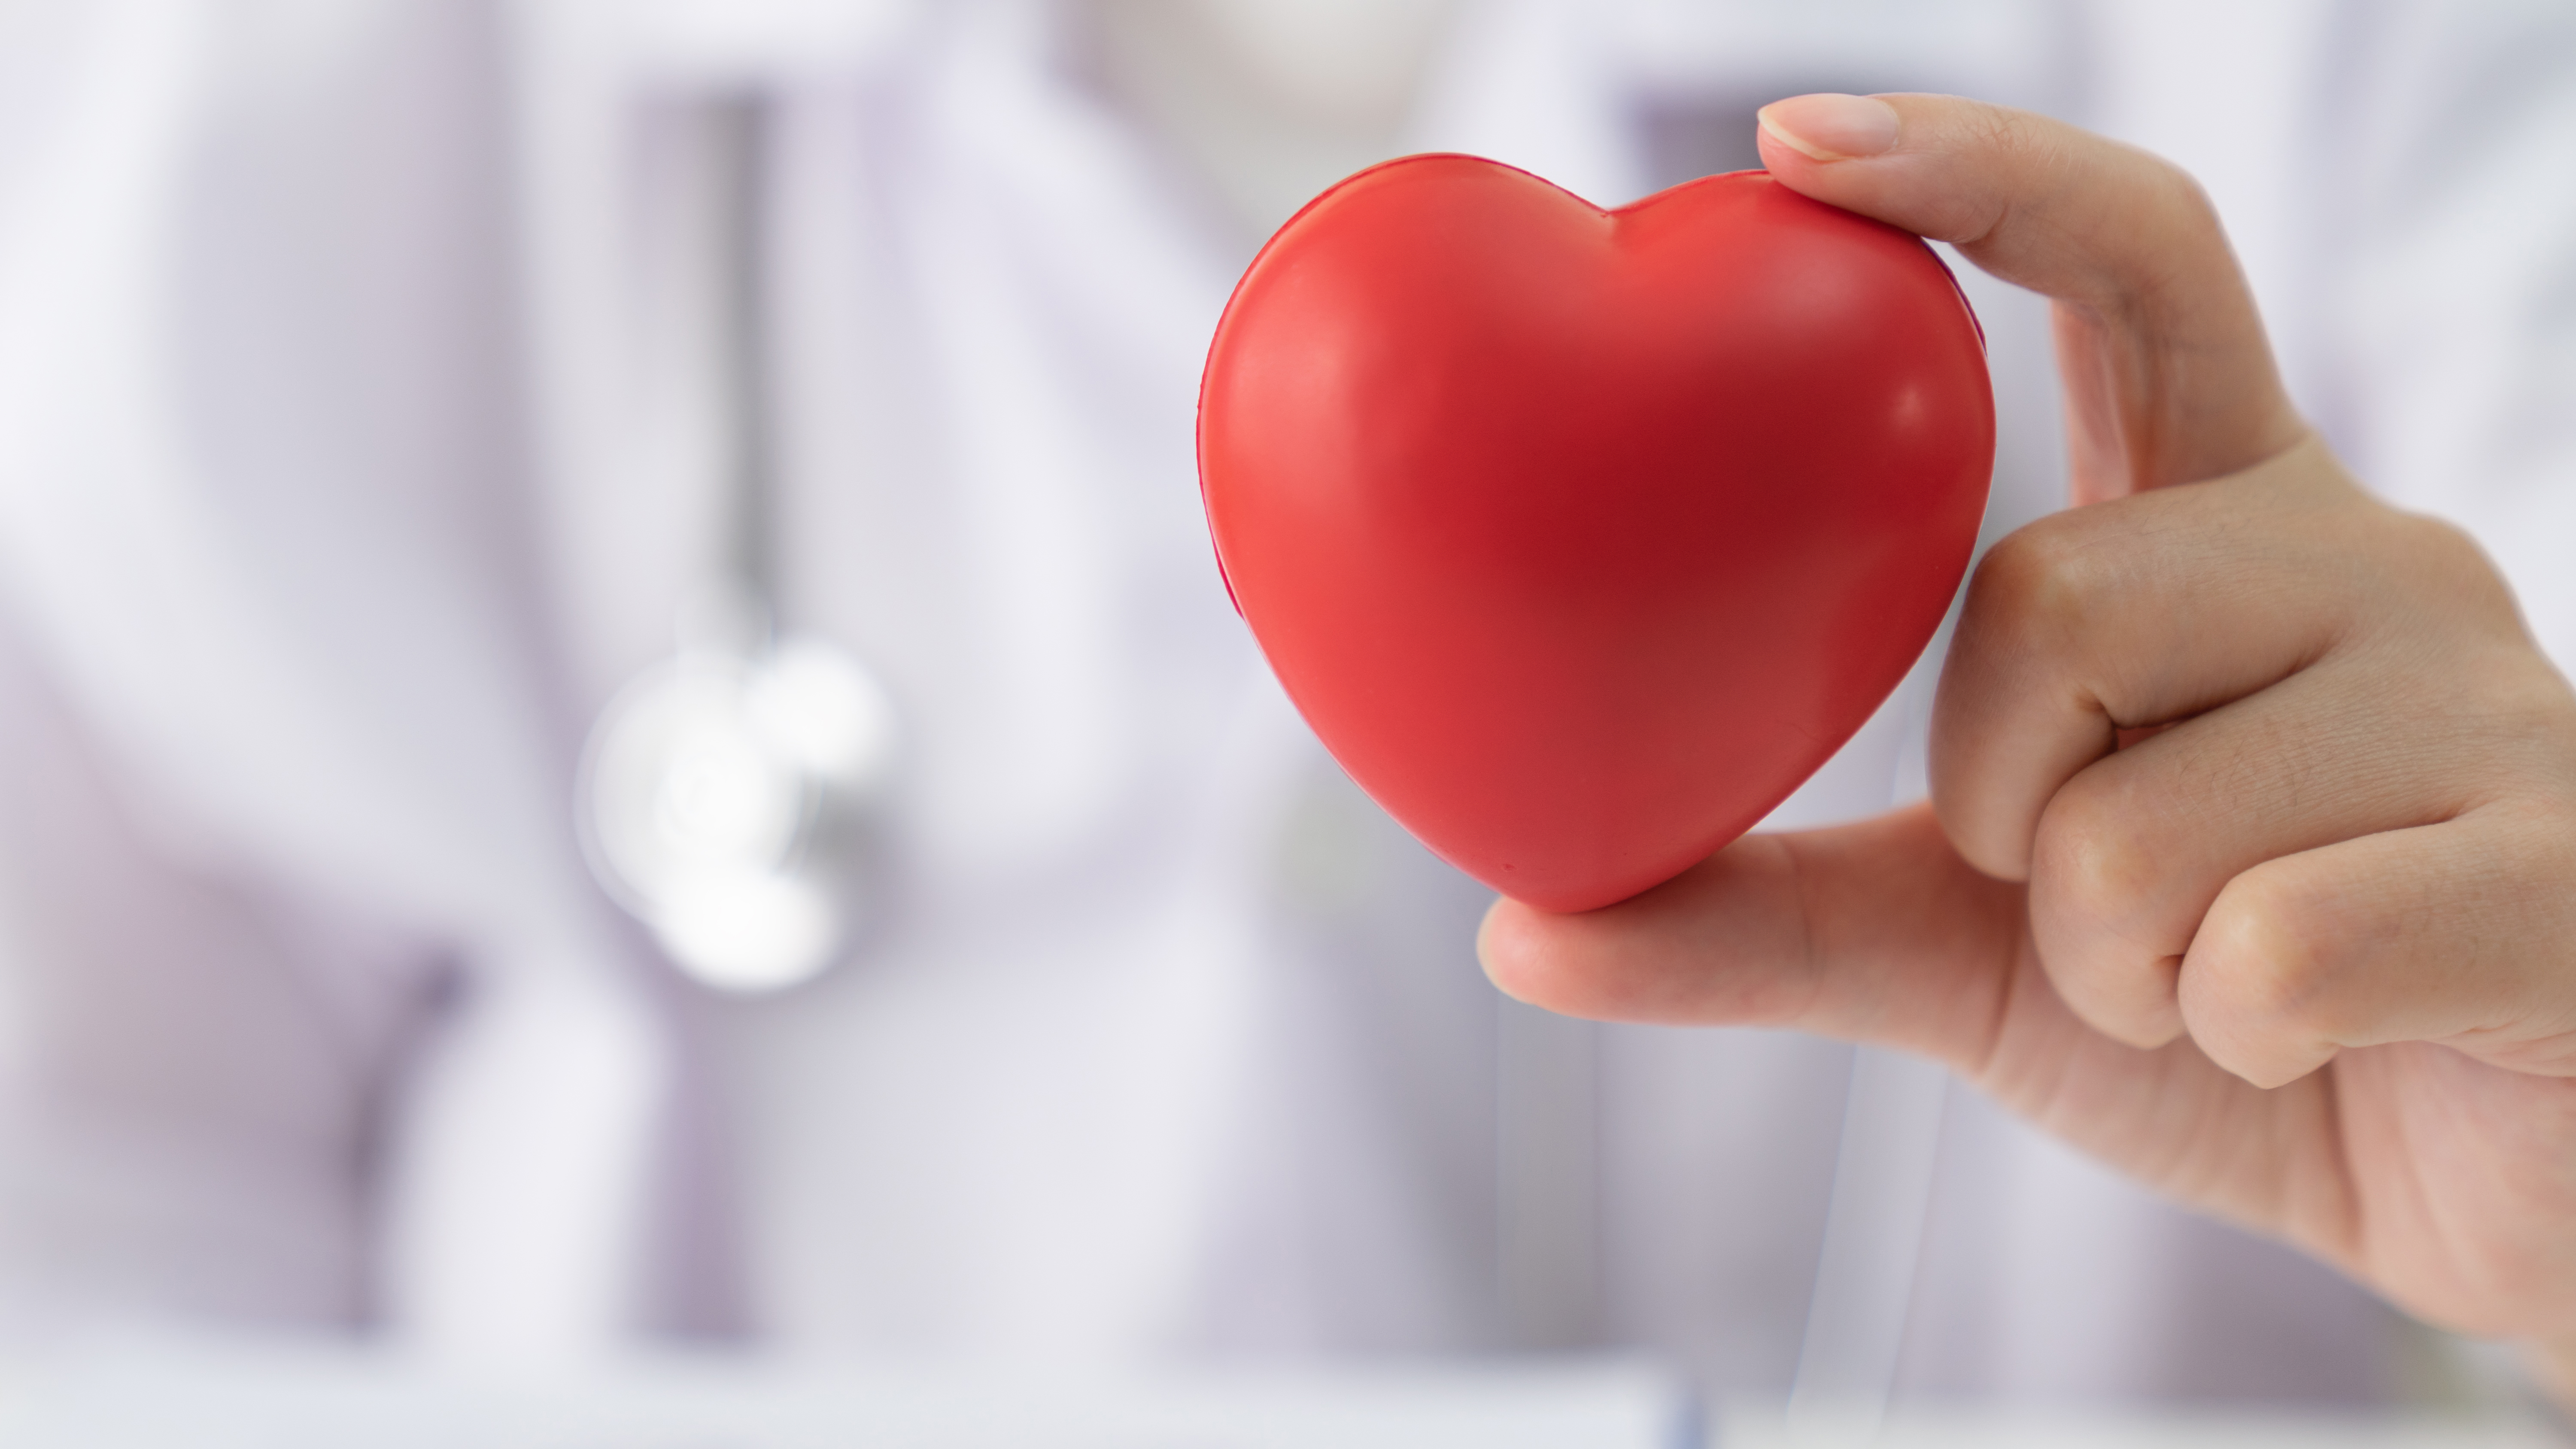 Día de la Hipertensión Arterial: por qué es un “mal silencioso” y la adherencia al tratamiento es clave 